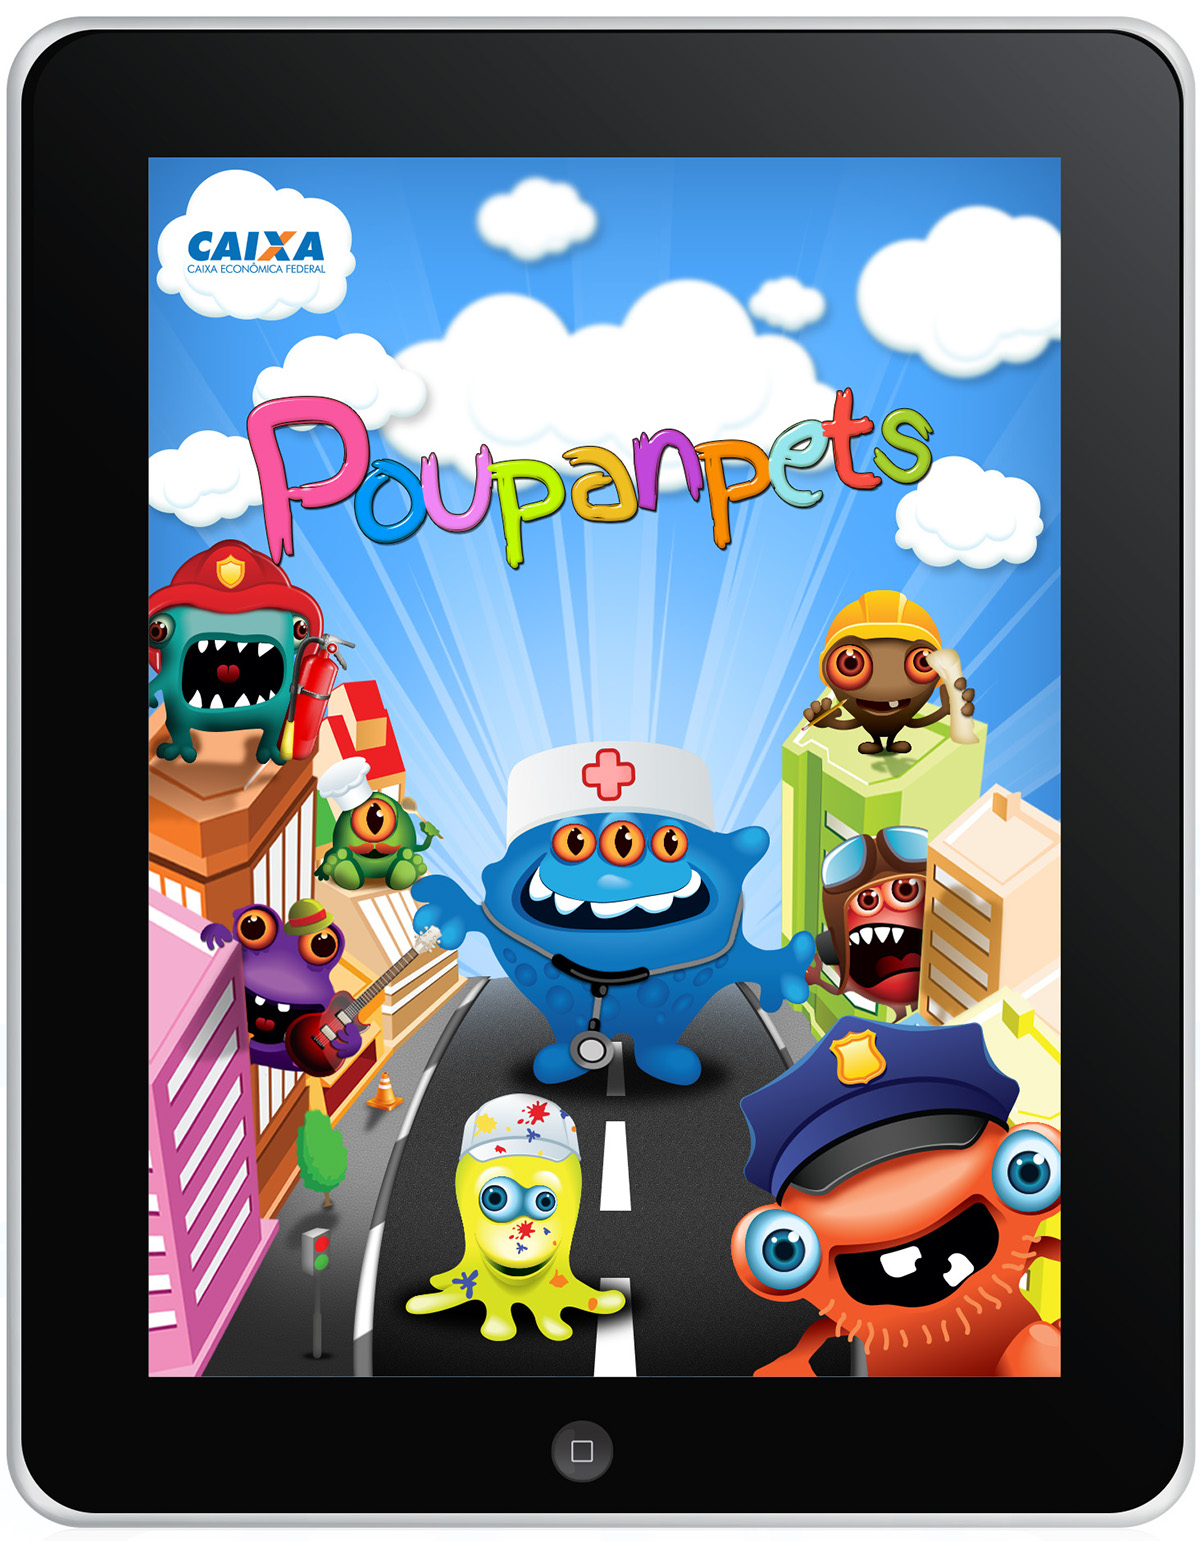 game poupançudos Caixa iPad jogo educação financeira jogo para crianças